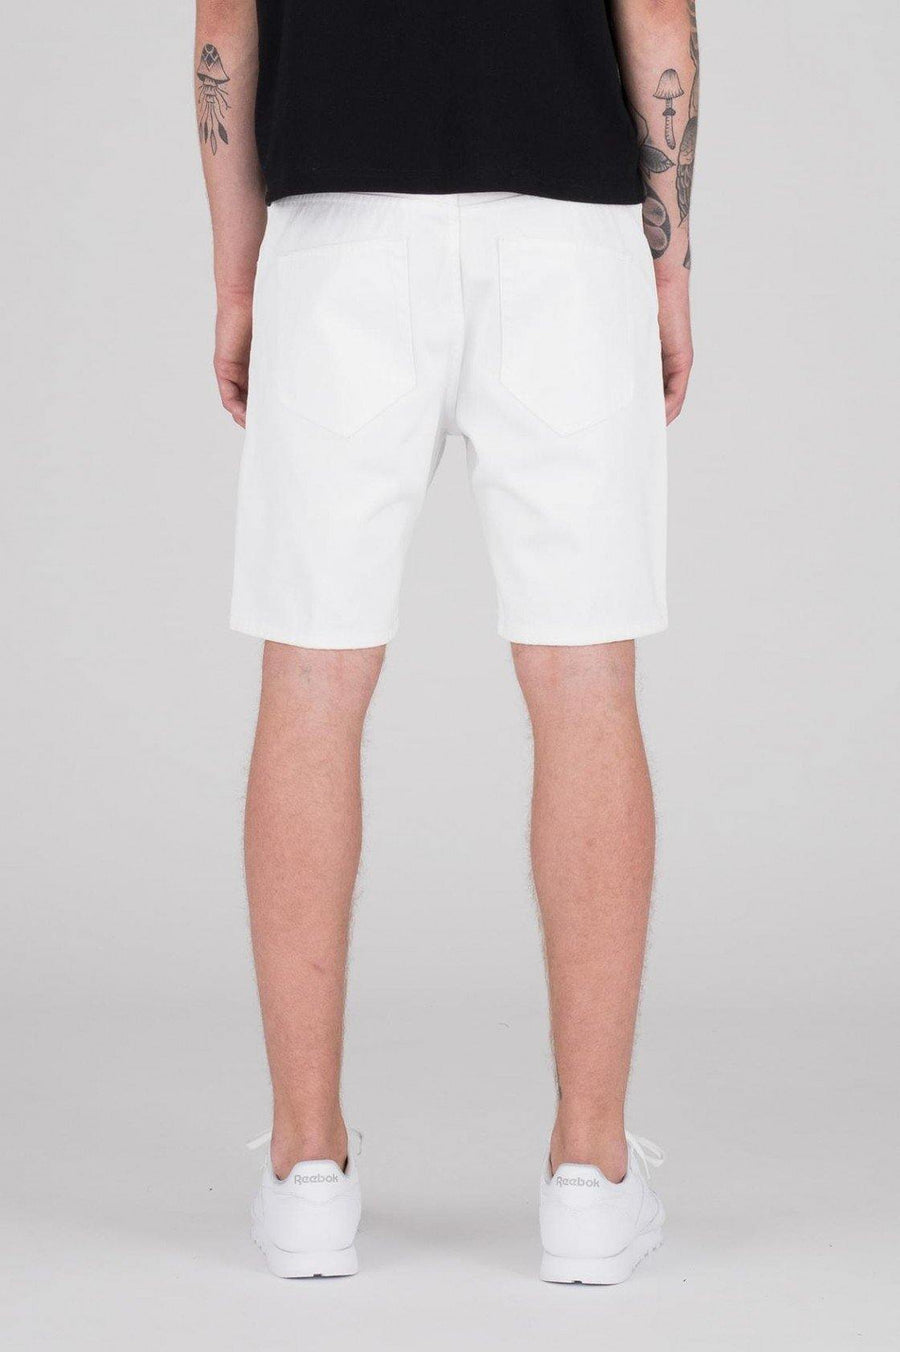 Bay Shorts White - Dr Denim Jeans - Australia & NZ